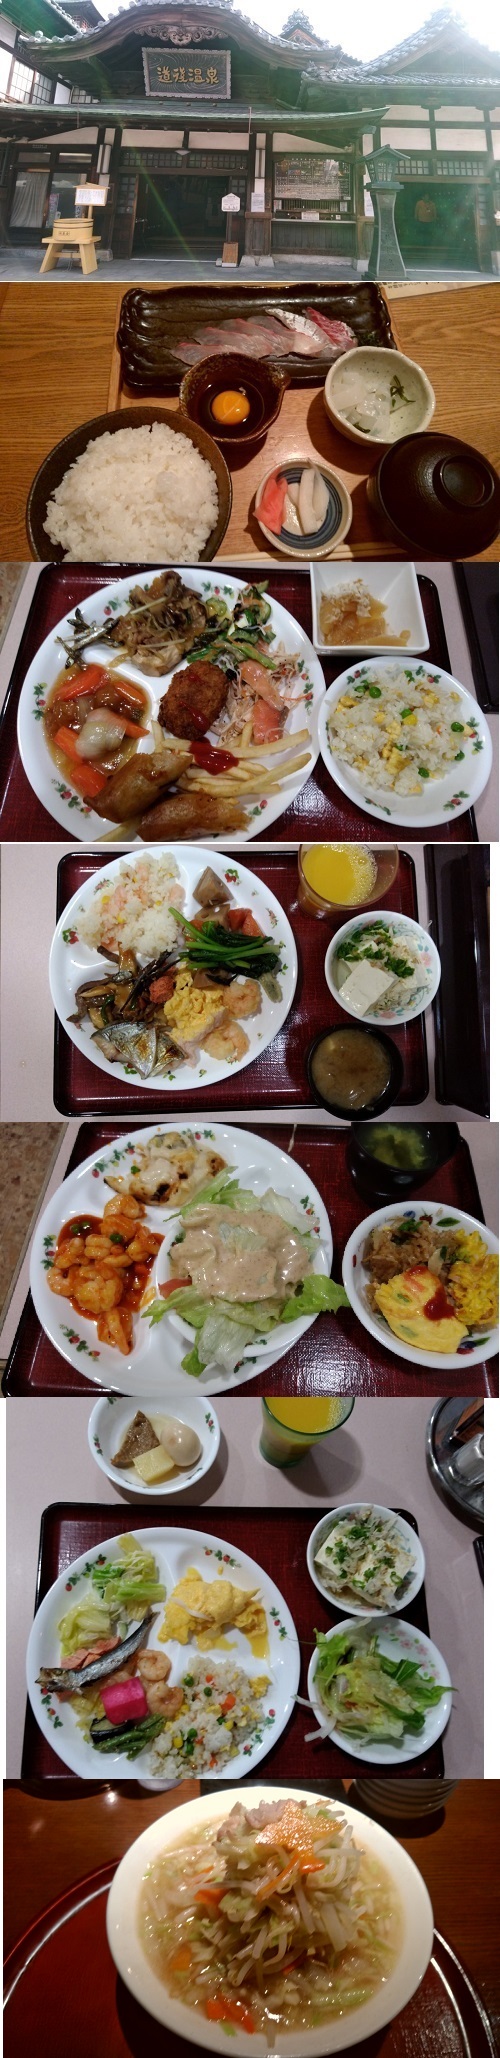 ホテル泰平(本館)2泊（☆☆☆☆☆）食事:5、風呂:5、部屋:3